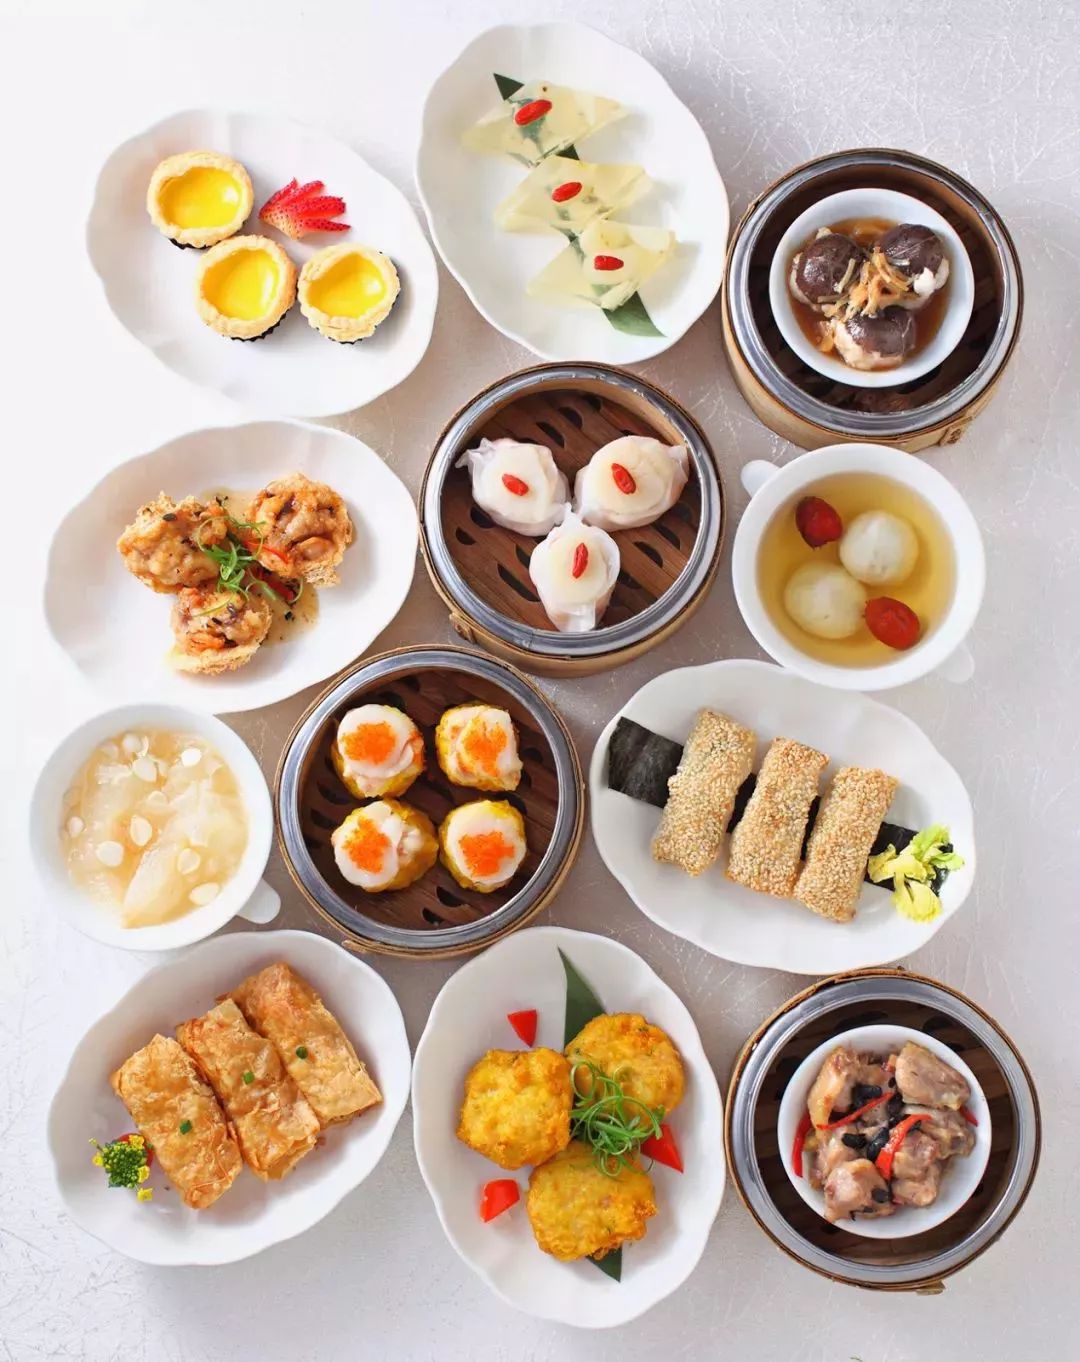 广州美食|首版《米其林指南》发布!入选的居然是?